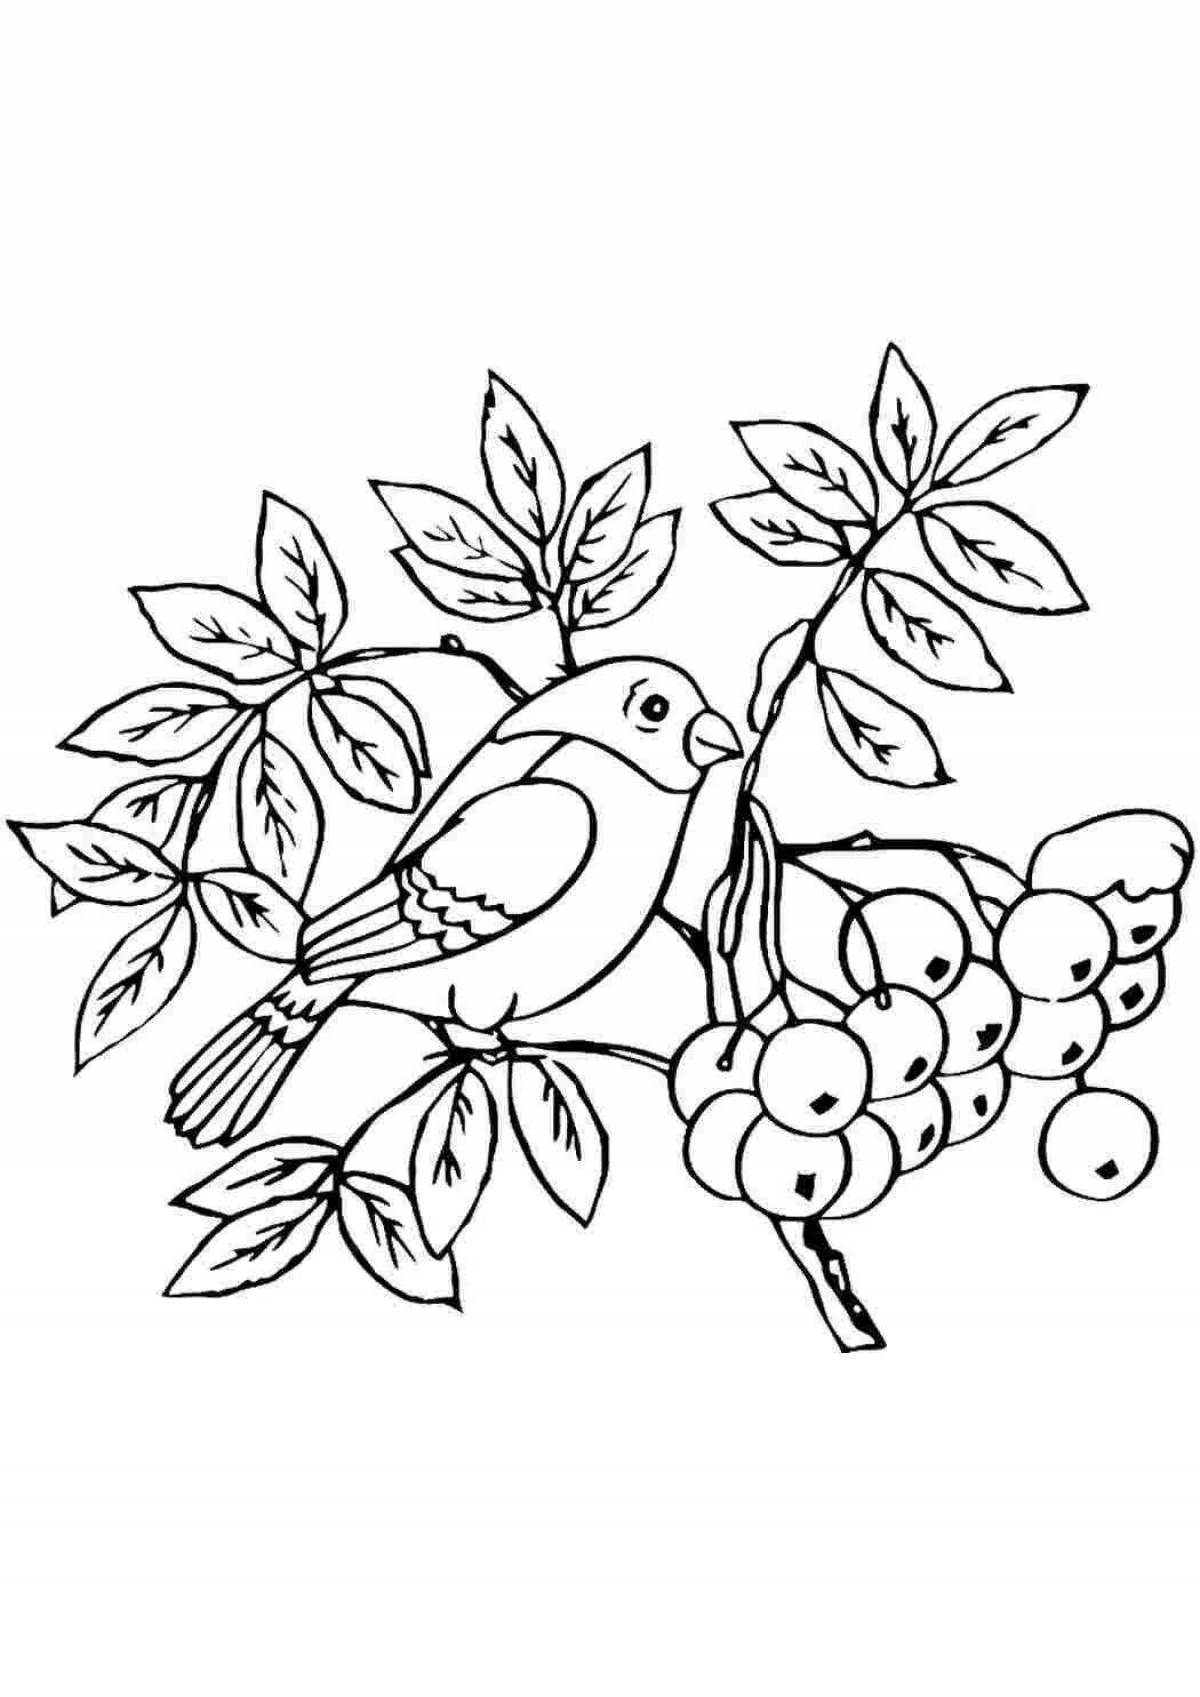 Coloring page elegant rowan berries